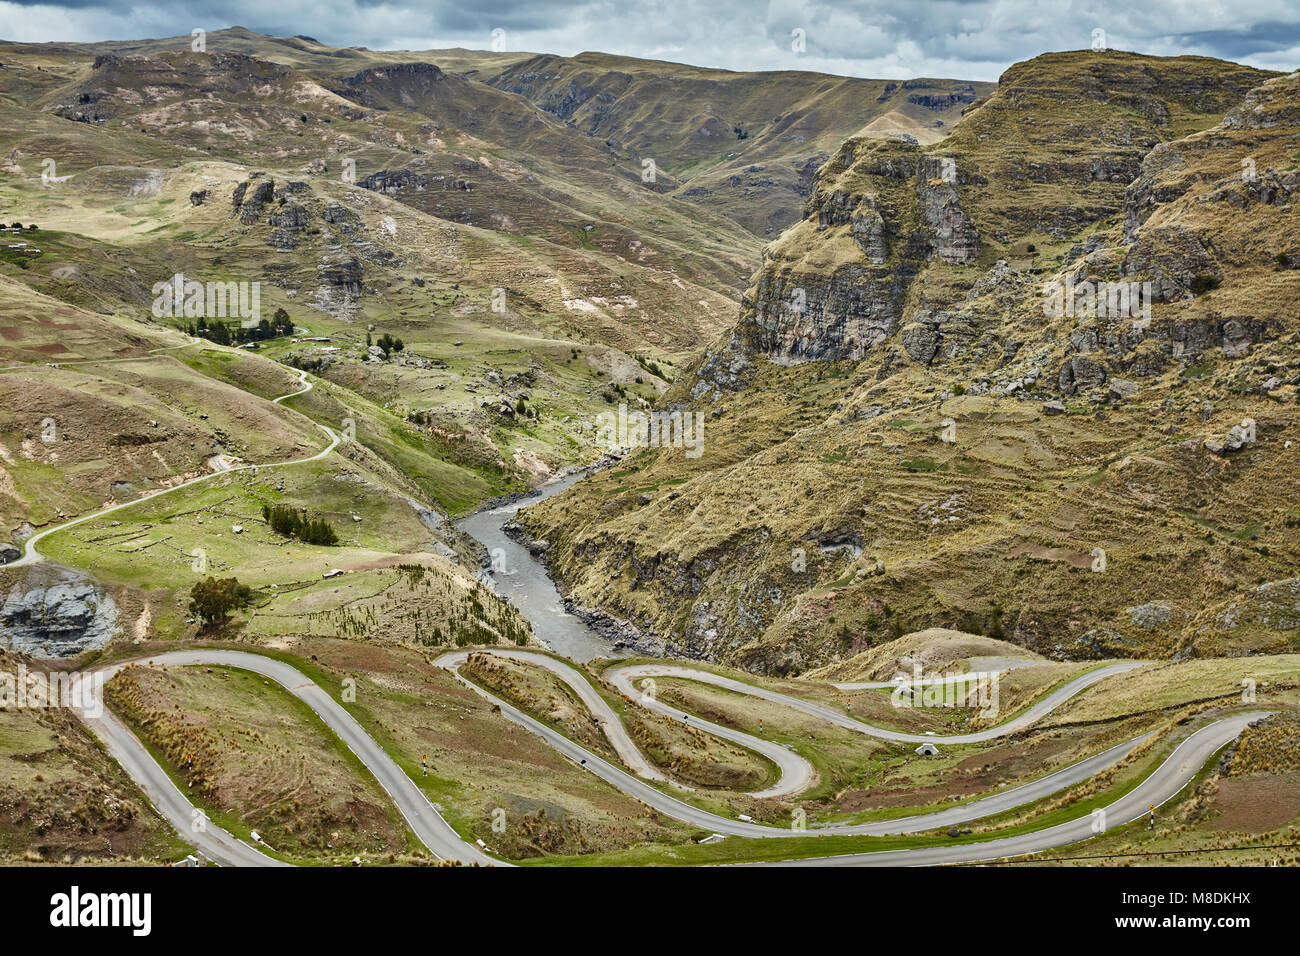 Con vistas al paisaje rural de carreteras con curvas, Huinchiri, Cusco, Perú Foto de stock